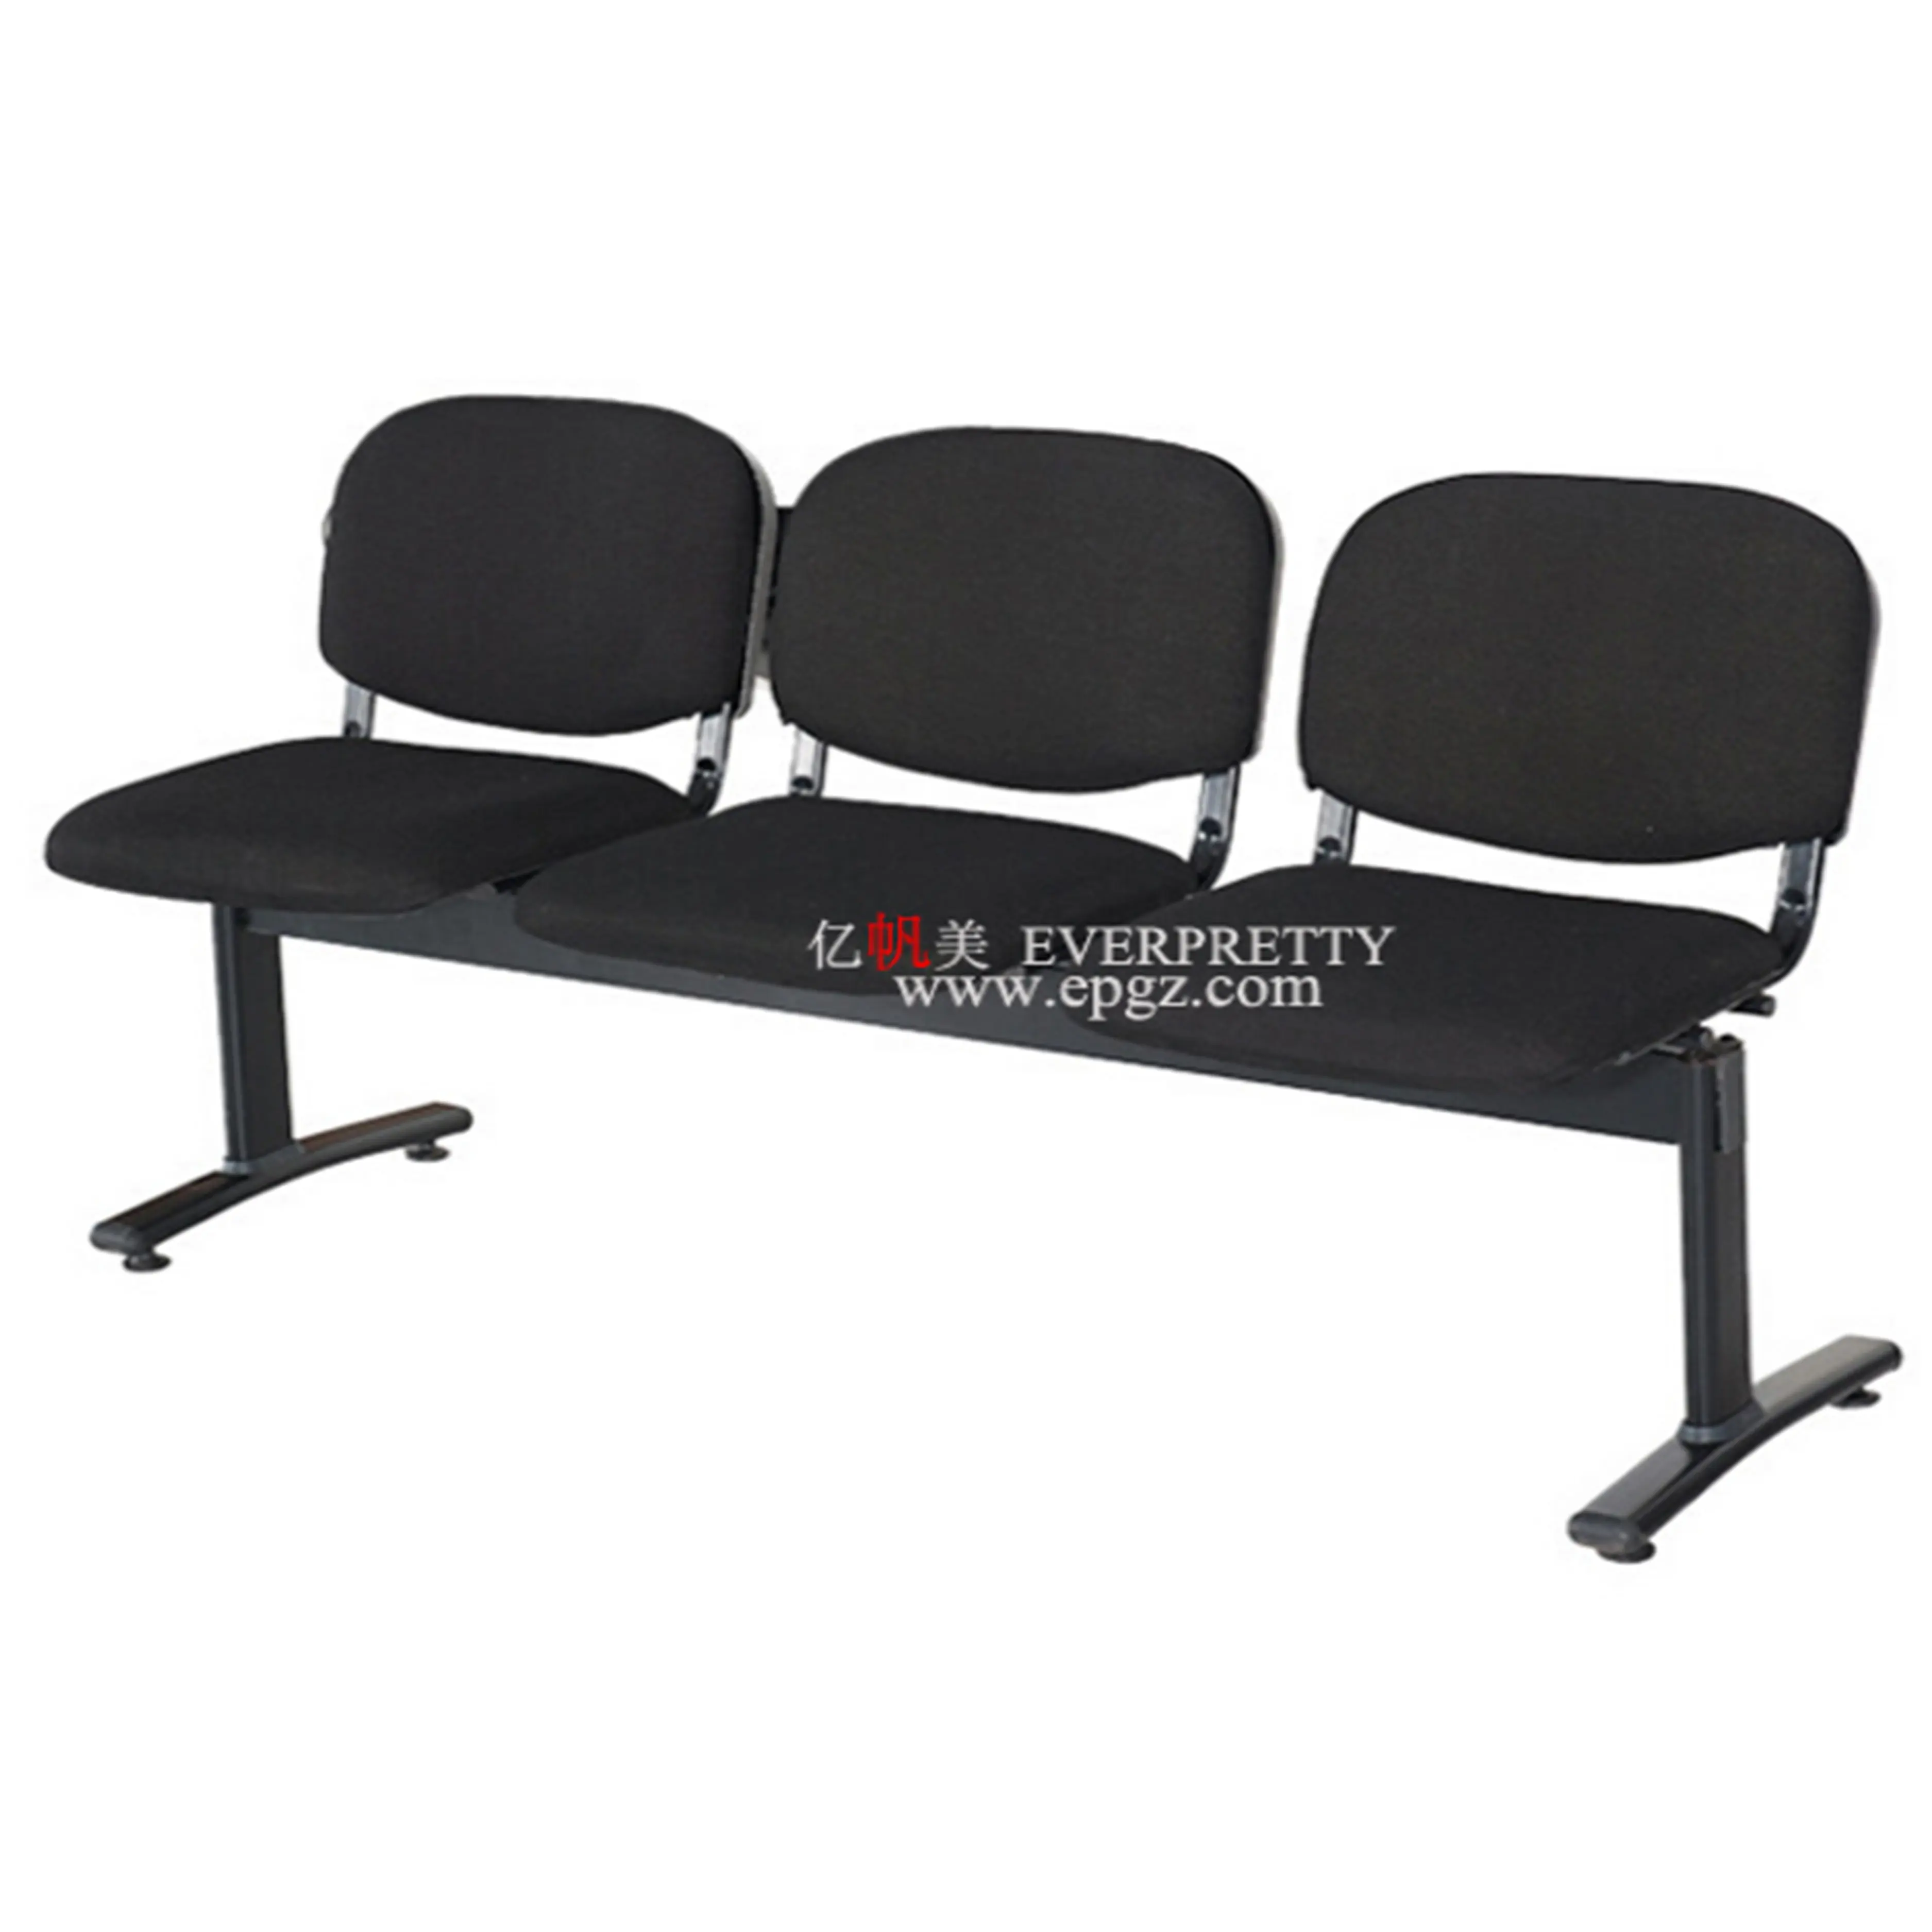 Moderno 3 Assento de Tecido Cadeira de Espera do Aeroporto, Confortáveis Cadeiras da Sala de Espera do Hospital, Mobília Da Sala De Espera